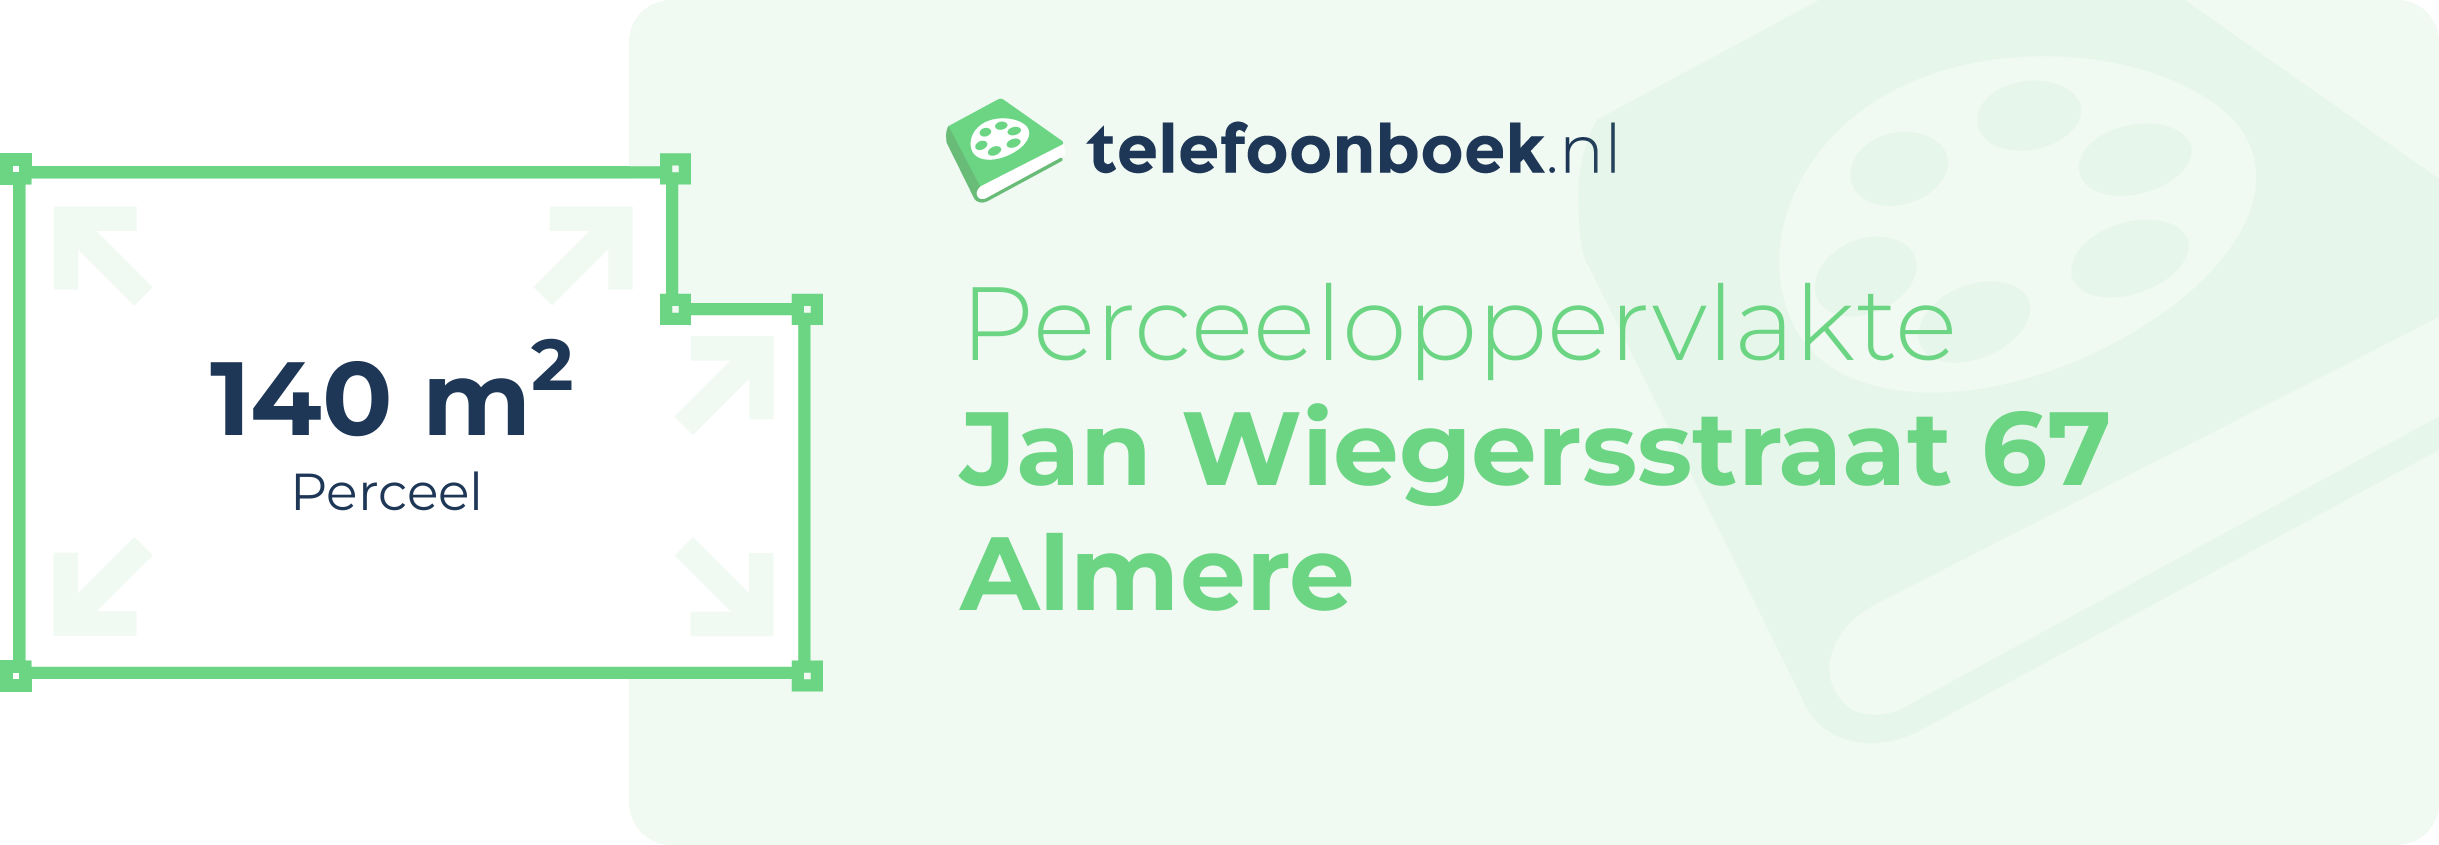 Perceeloppervlakte Jan Wiegersstraat 67 Almere